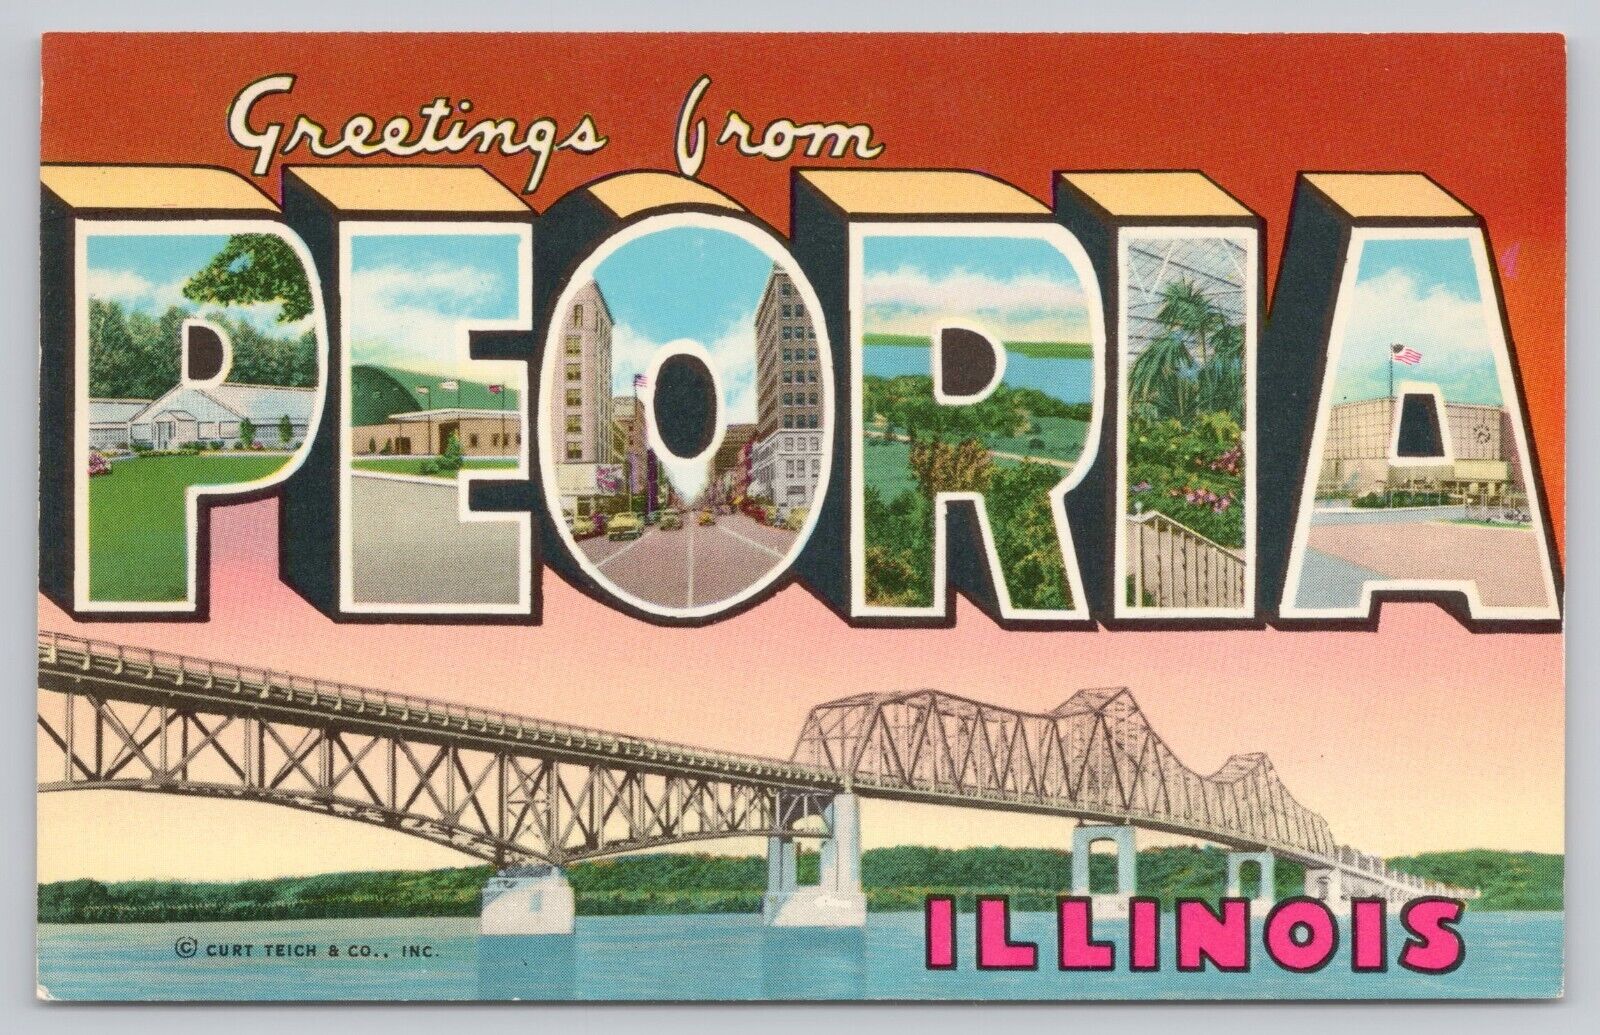 Peoria Illinois, Large Letter Greetings, Bridge, Vintage Postcard